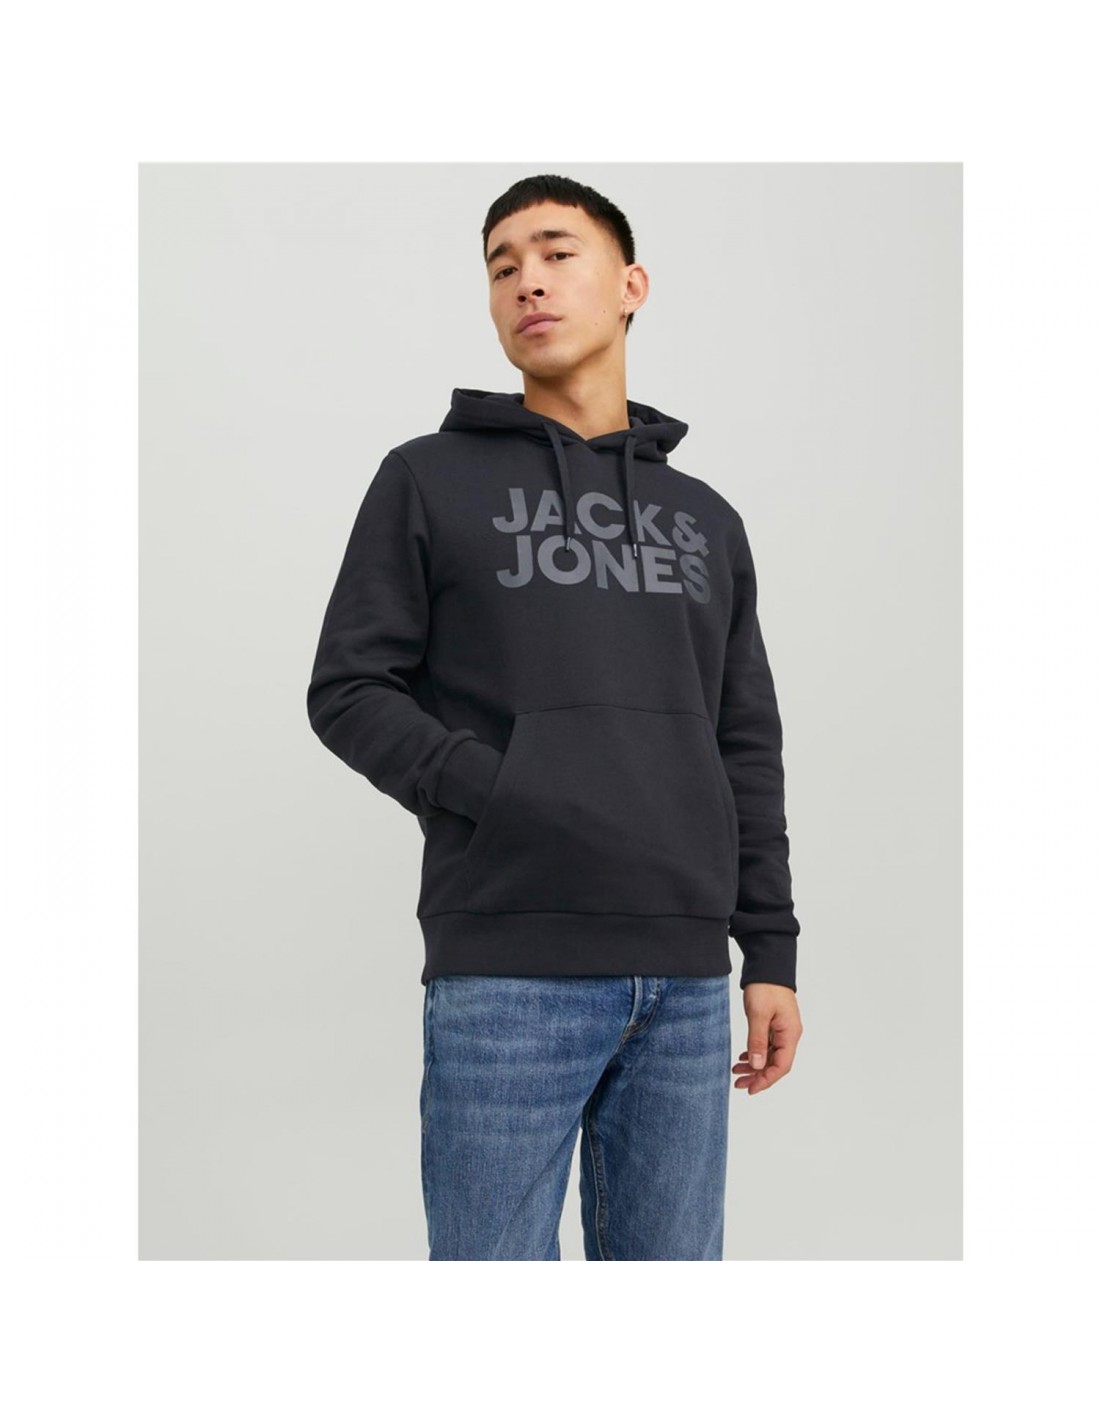 JACK & JONES Sudaderas con capucha para hombres, Comprar online